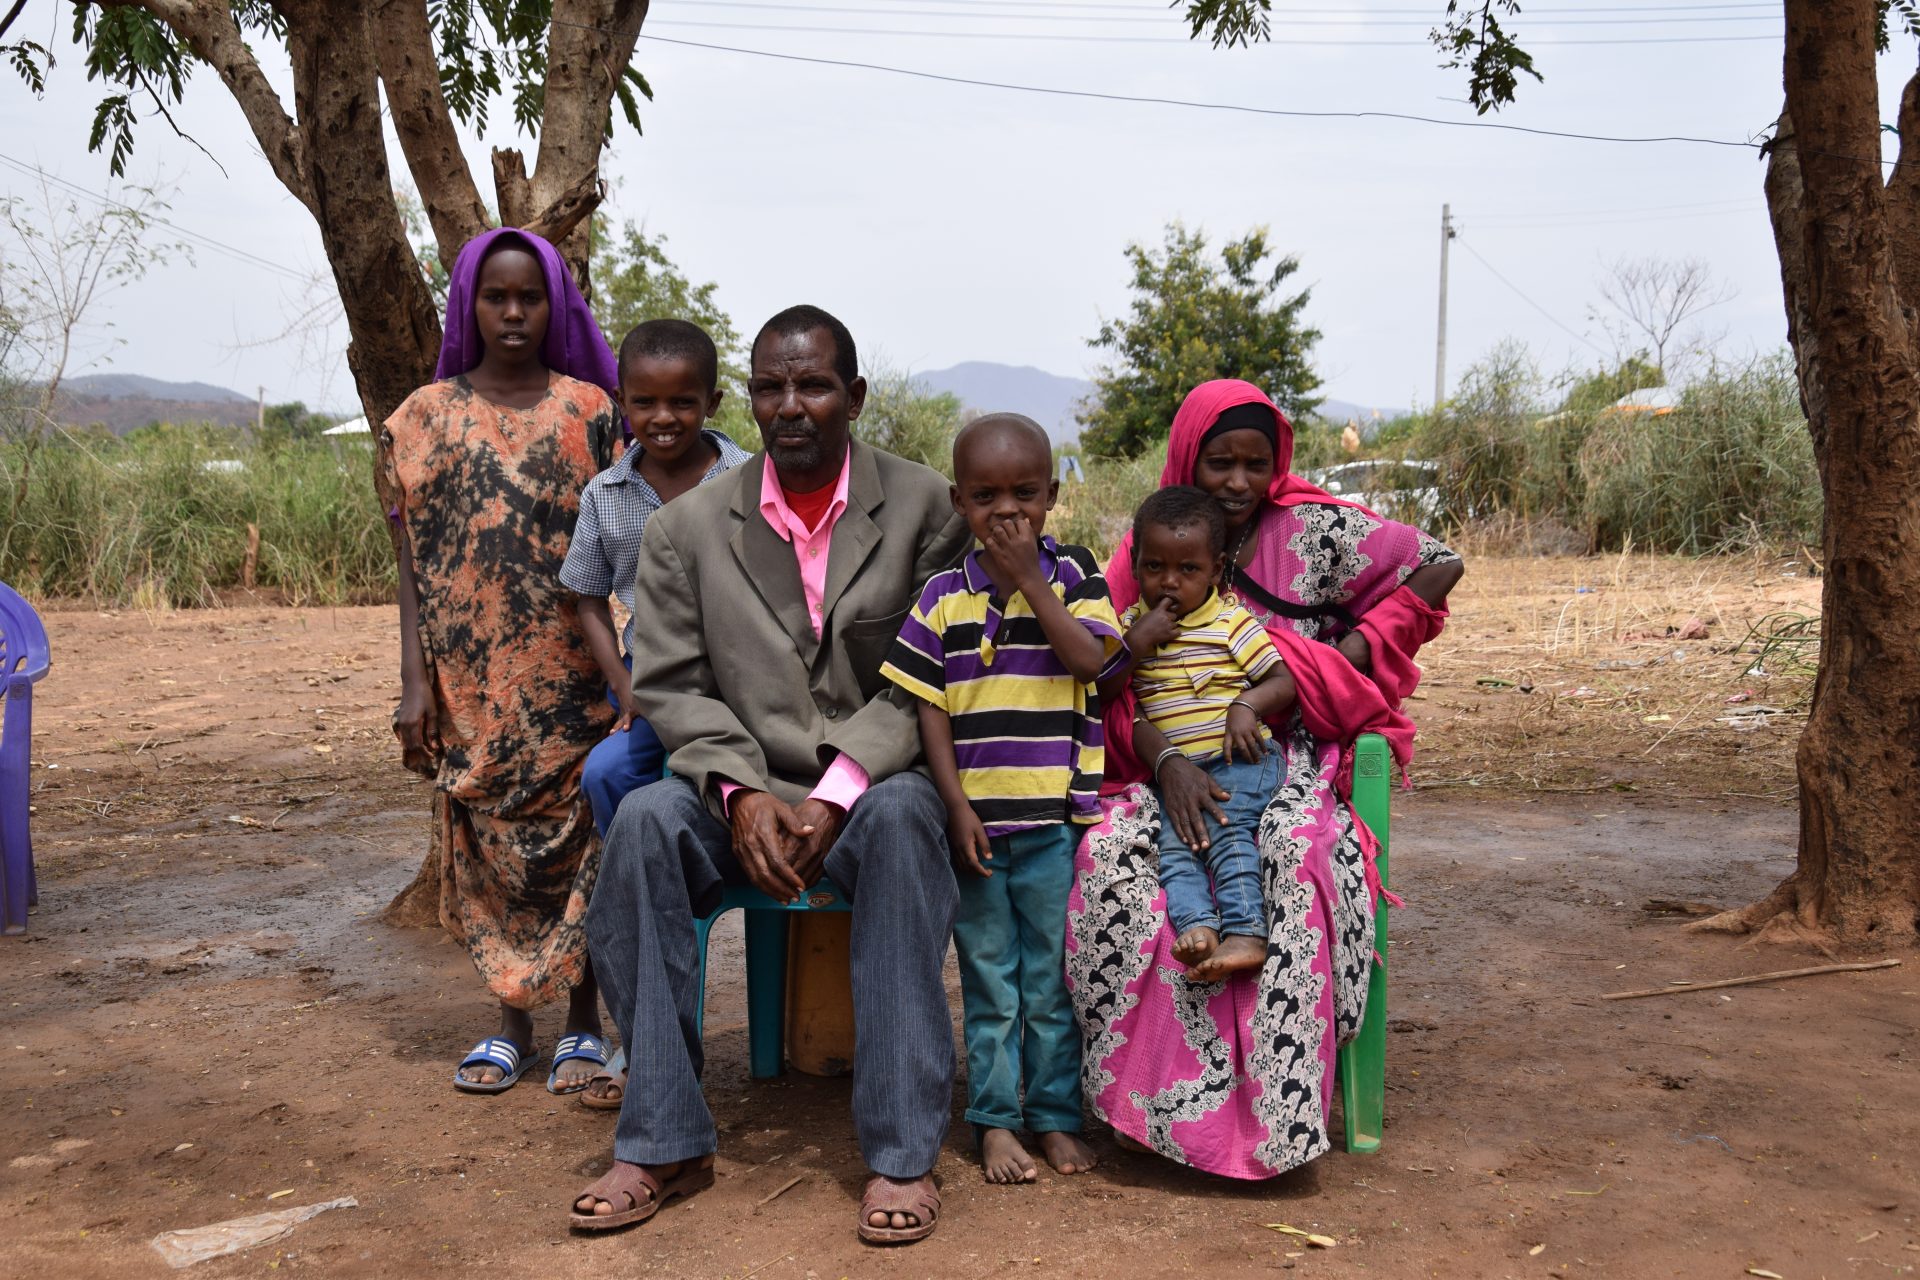 In Kenia macht sich die Familie Guyo Sorgen um das Leben und die Gesundheit ihrer Kinder, die unter den ständig zunehmenden Hitzewellen leiden.